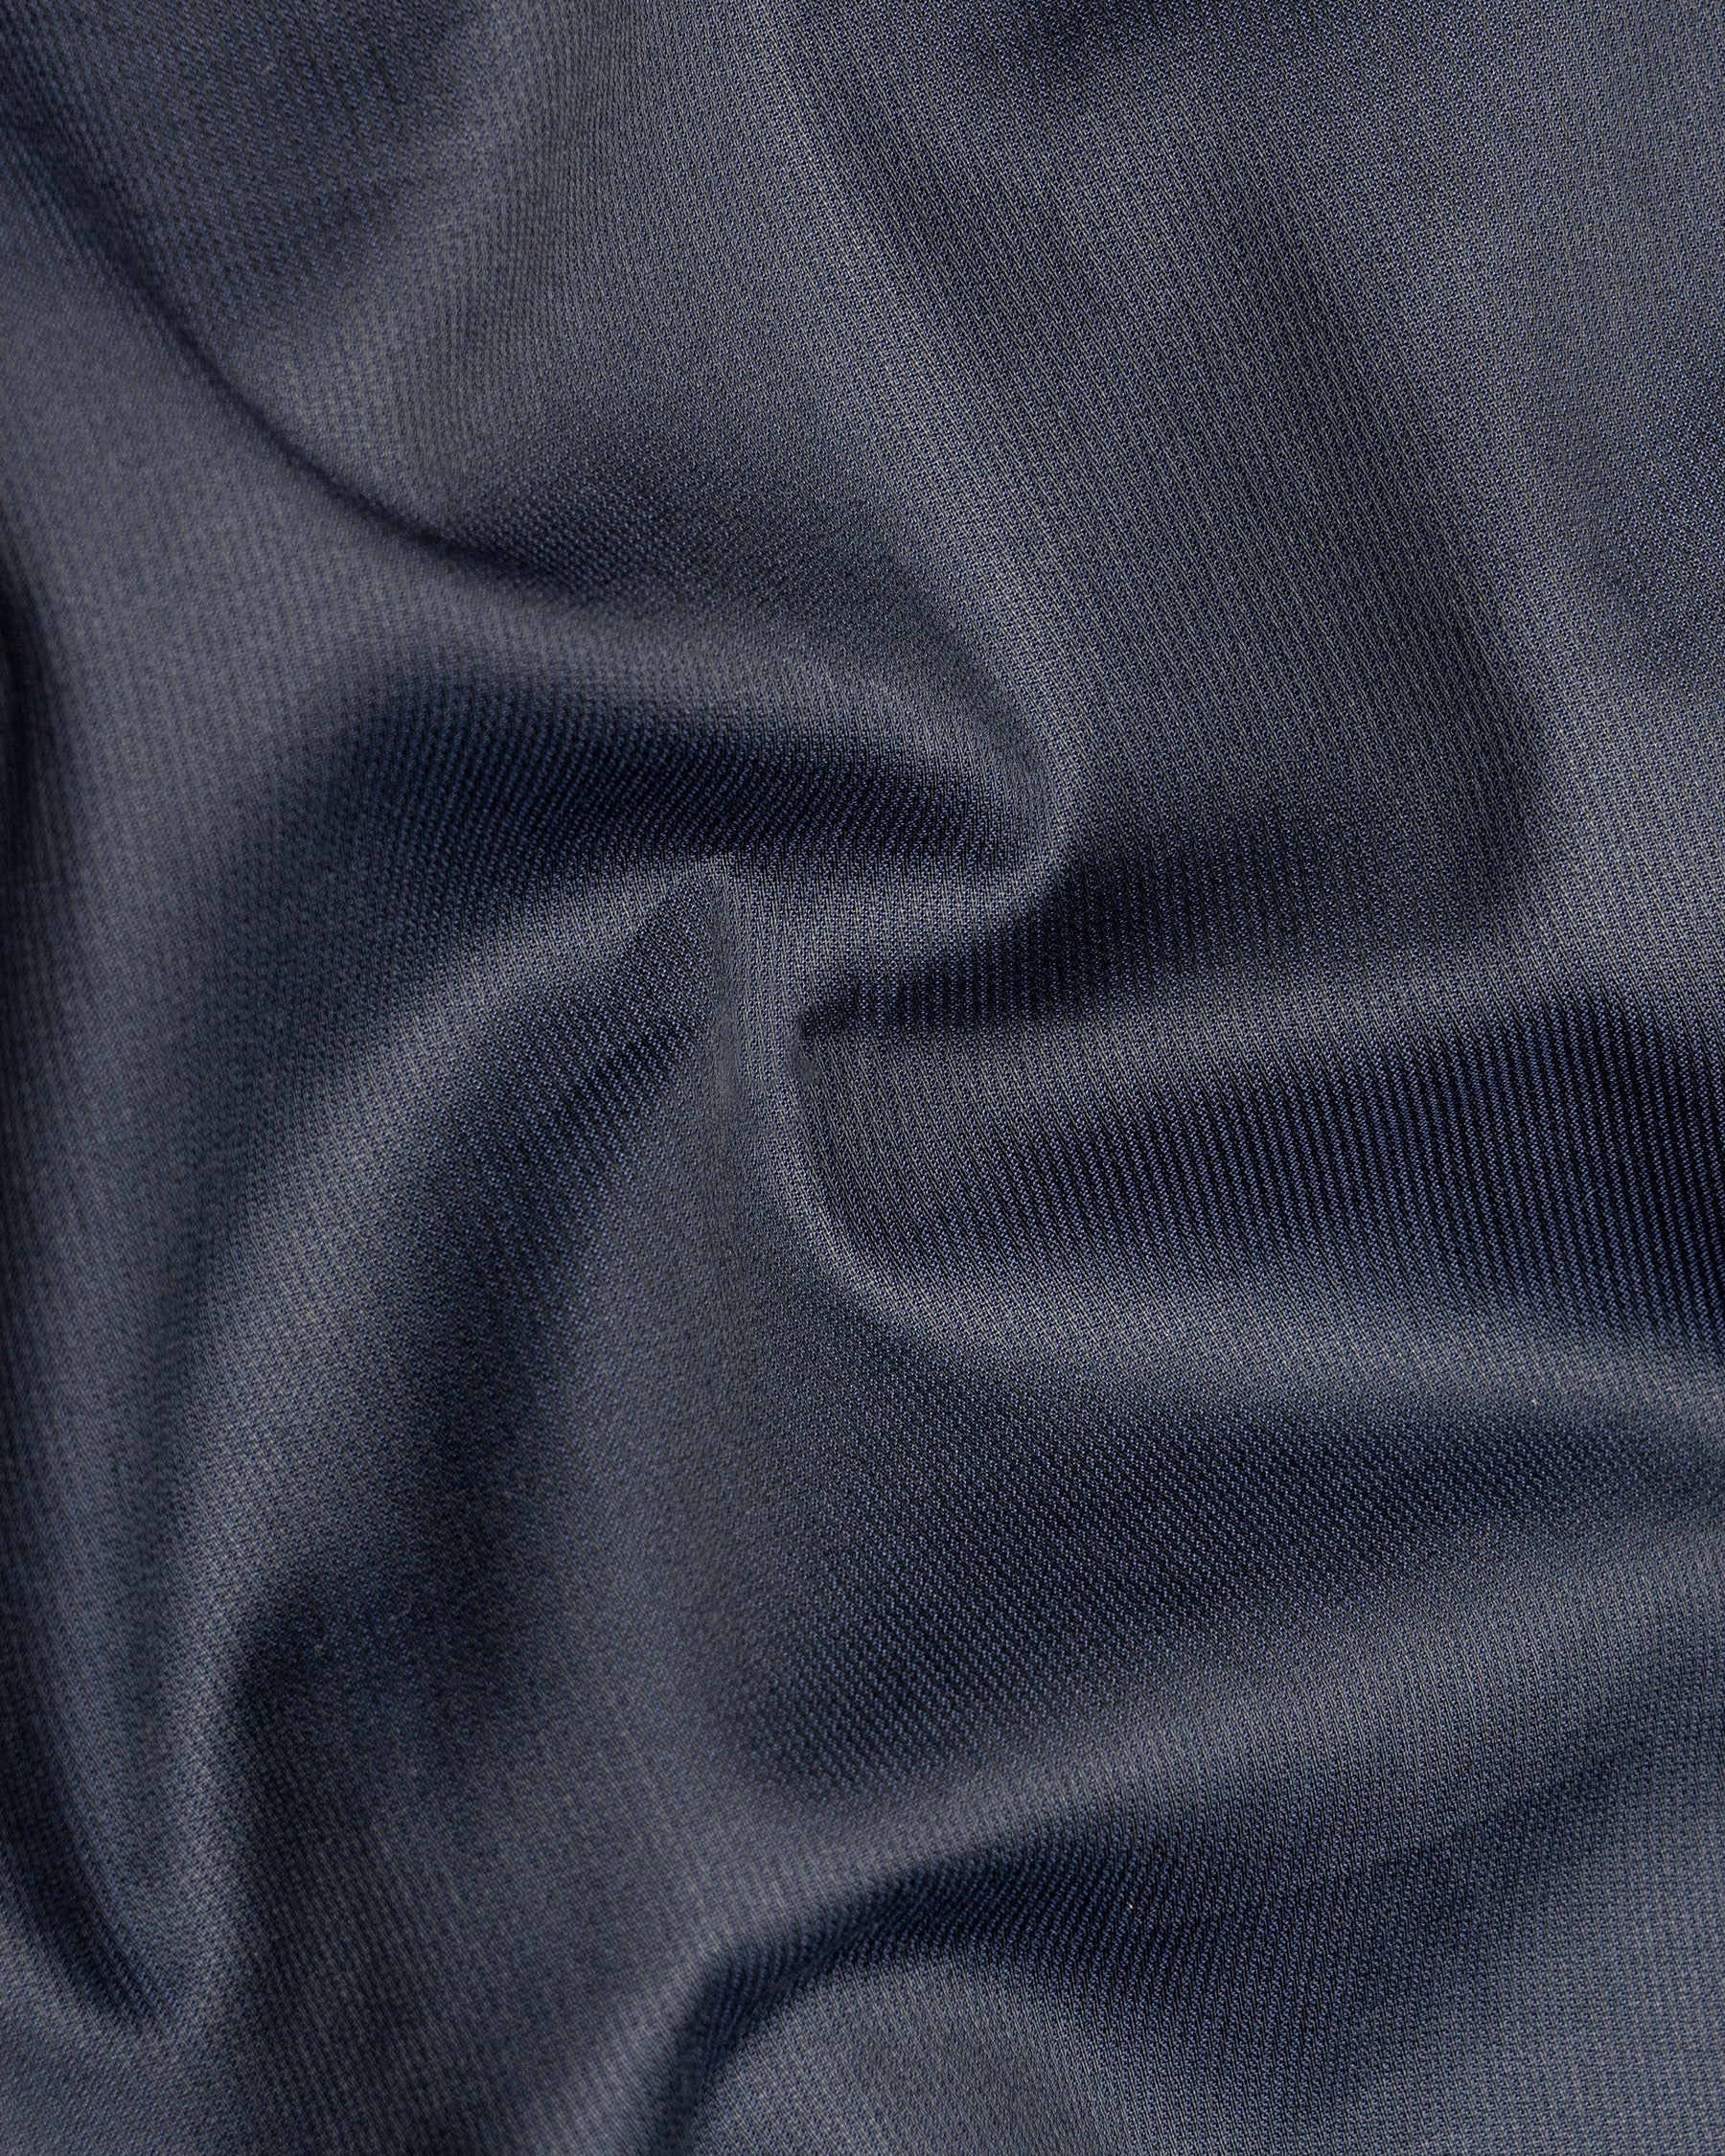 Tuna blue Pinstriped Premium Cotton Shirt 5197-38, 5197-H-38, 5197-39, 5197-H-39, 5197-40, 5197-H-40, 5197-42, 5197-H-42, 5197-44, 5197-H-44, 5197-46, 5197-H-46, 5197-48, 5197-H-48, 5197-50, 5197-H-50, 5197-52, 5197-H-52